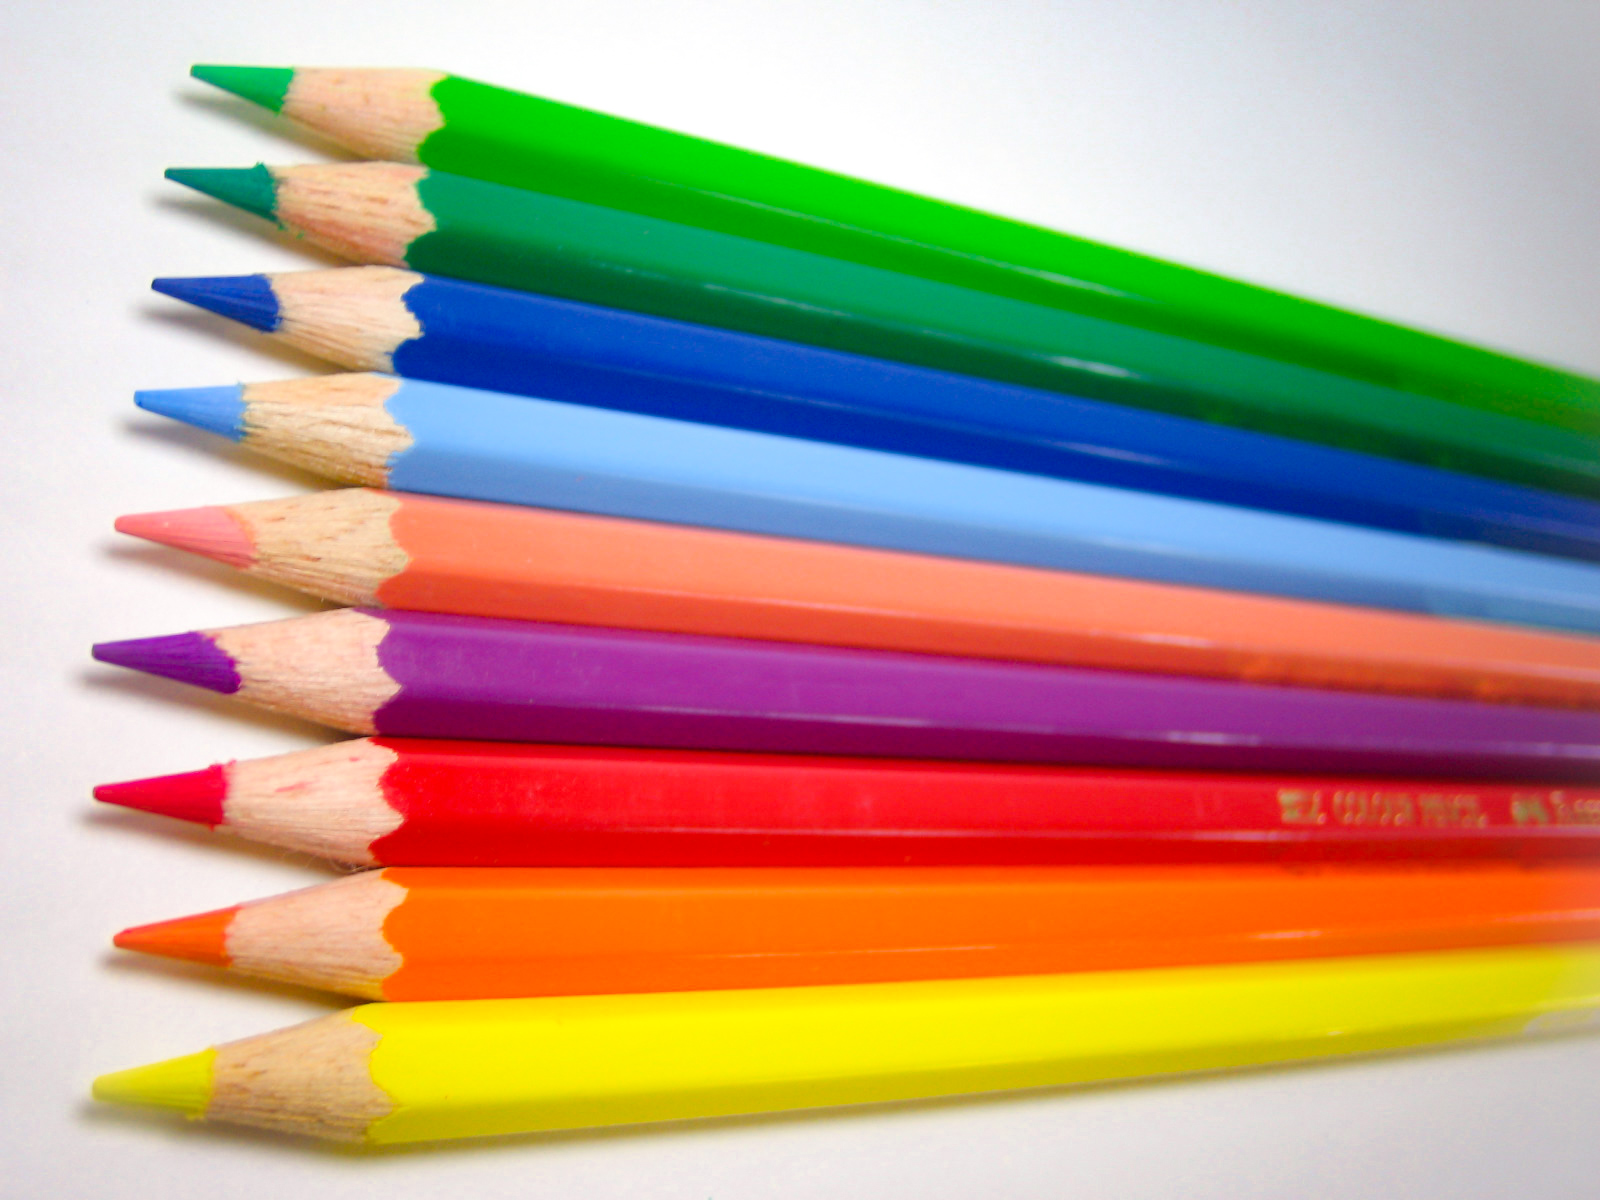 綺麗に並んだ9色の色鉛筆